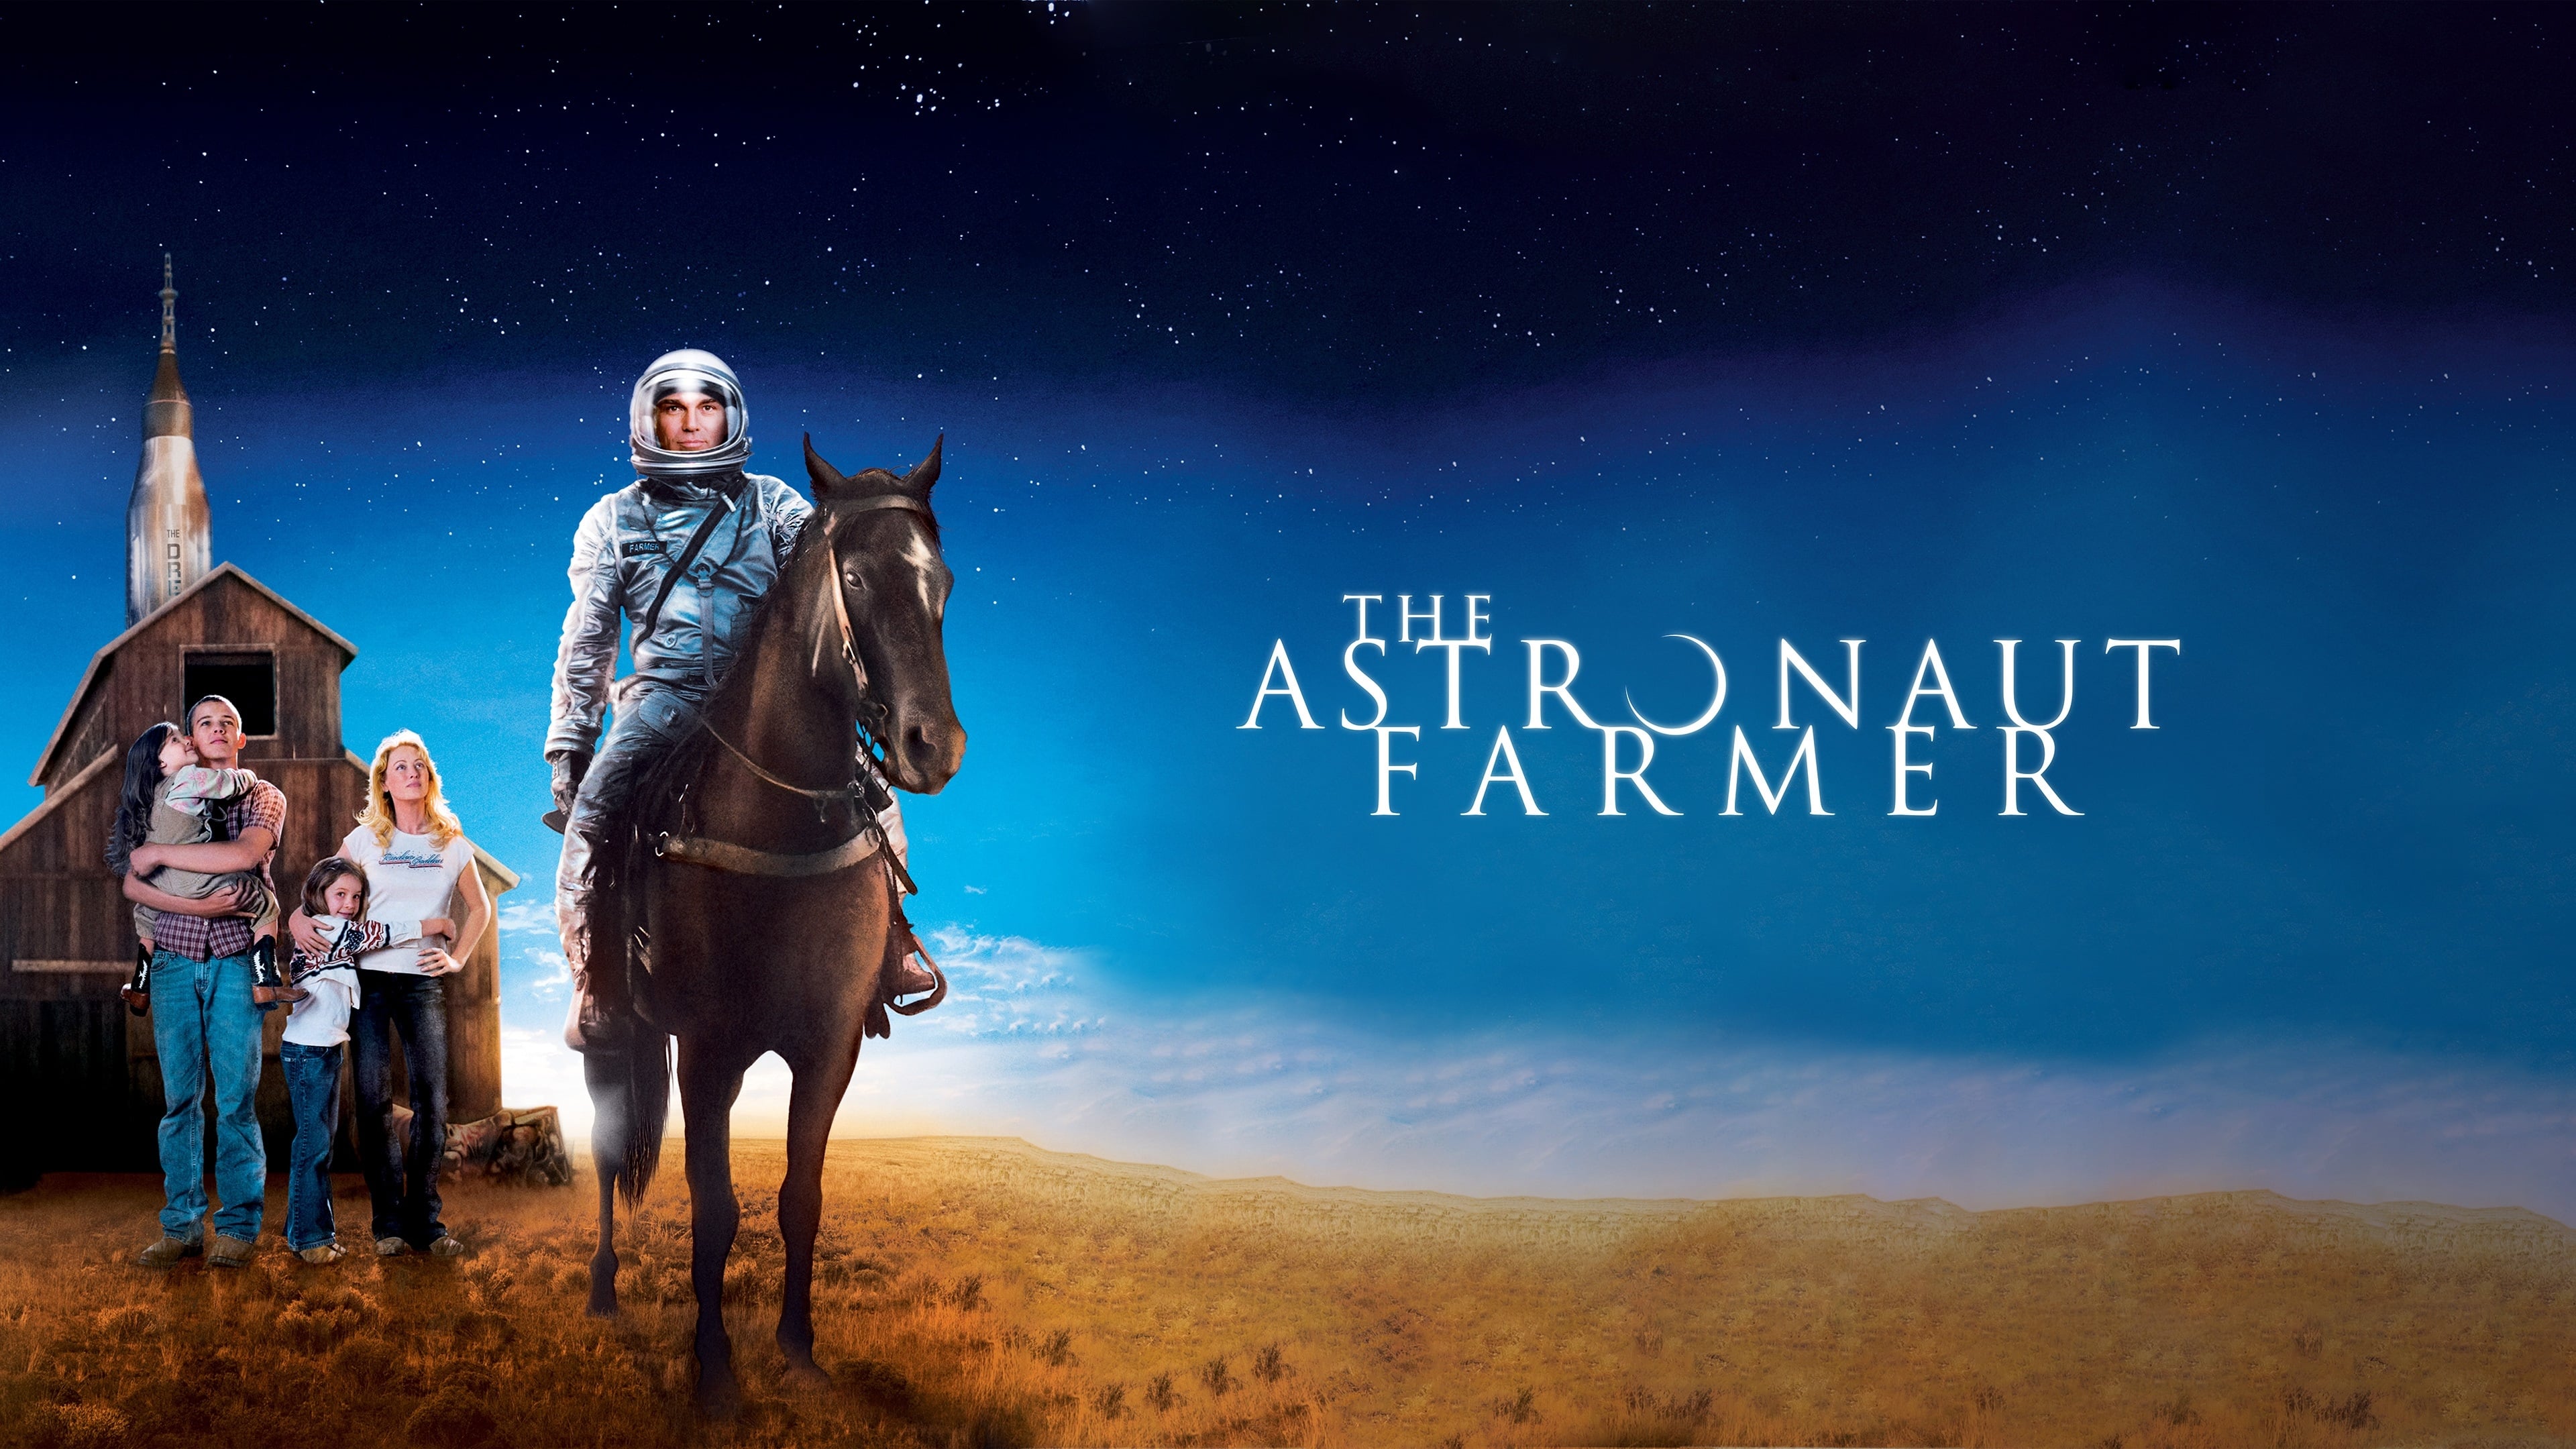 The Astronaut Farmer (2007)